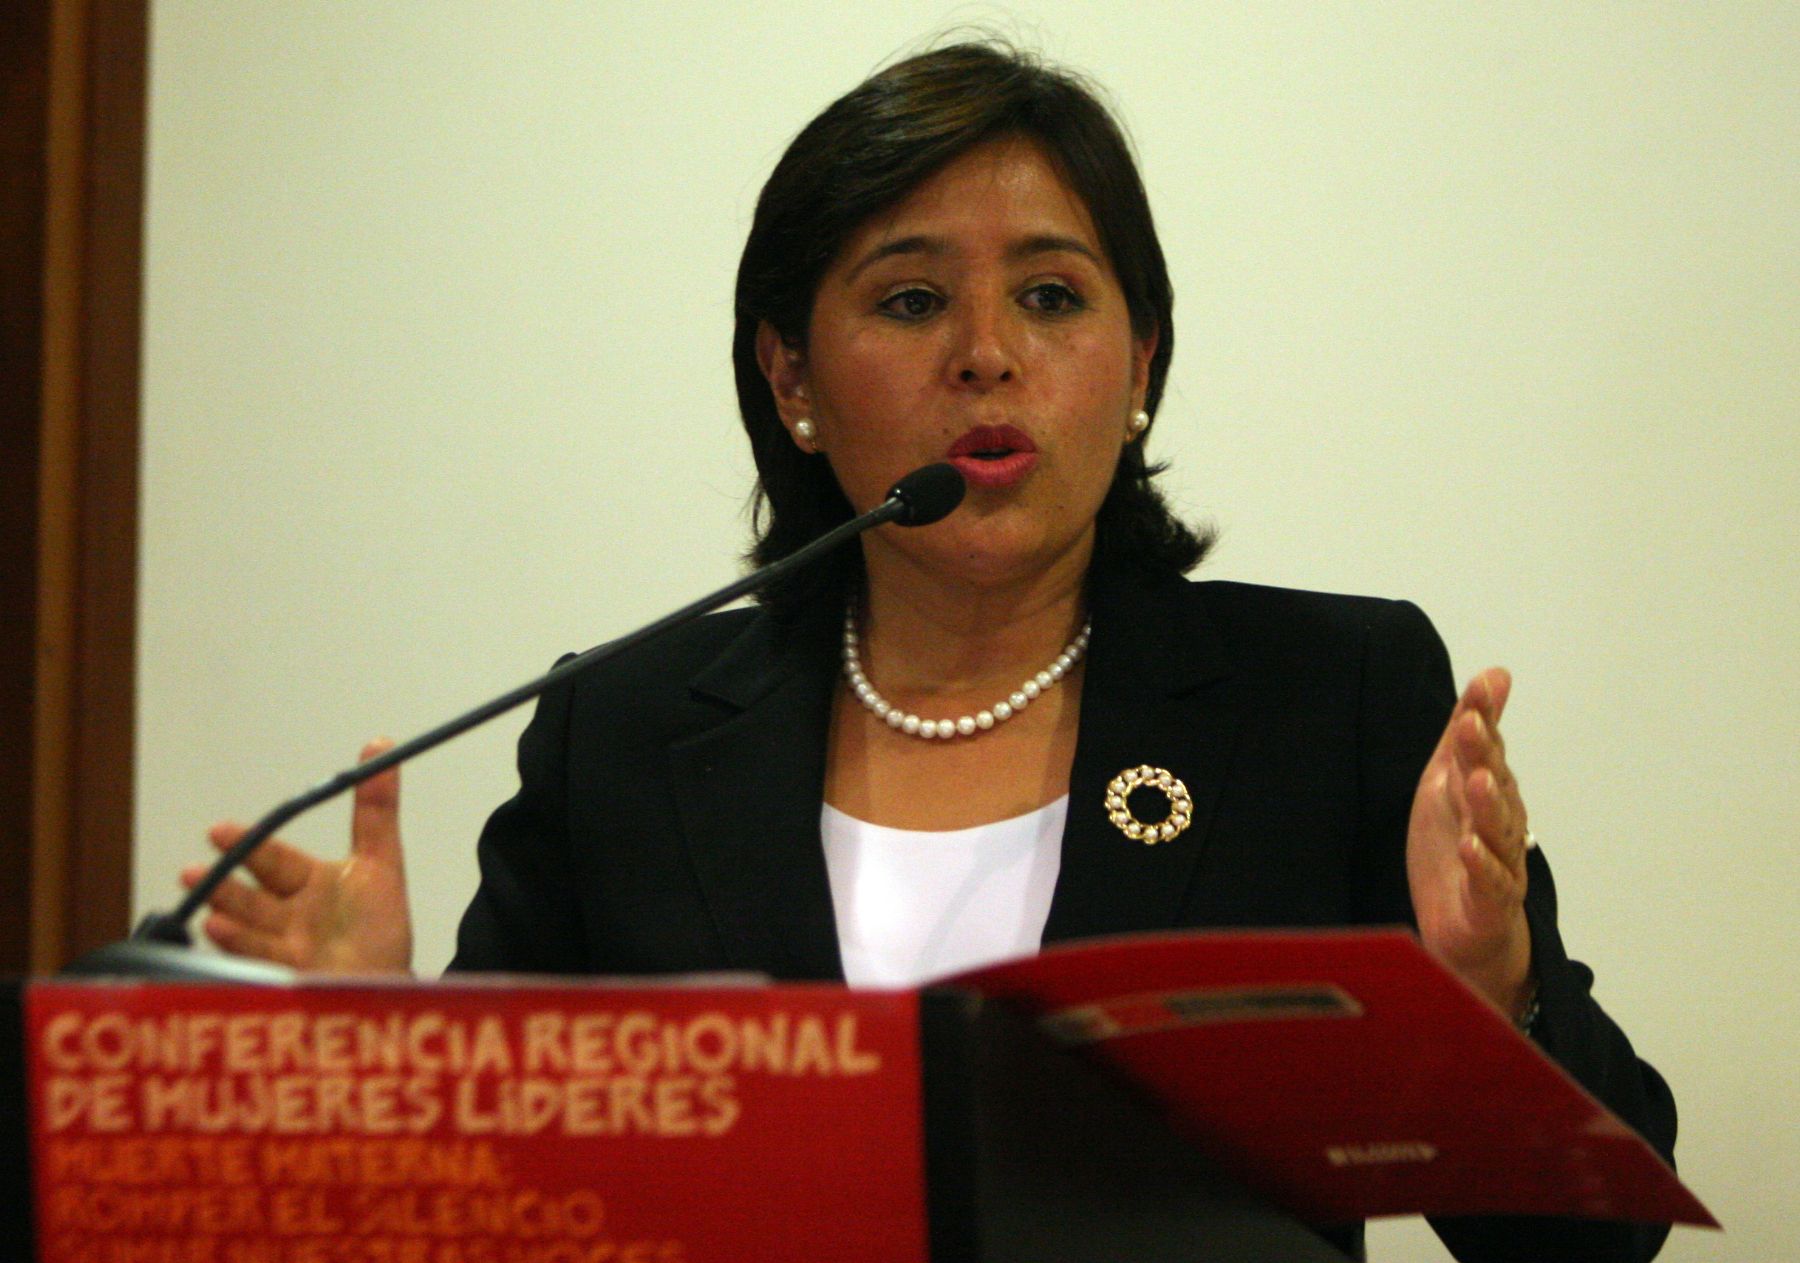 Ministra de la Mujer, Nidia Vilchez, participa de Conferencia Regional de Mujeres Líderes en Miraflores.Foto: ANDINA/Héctor Vinces.